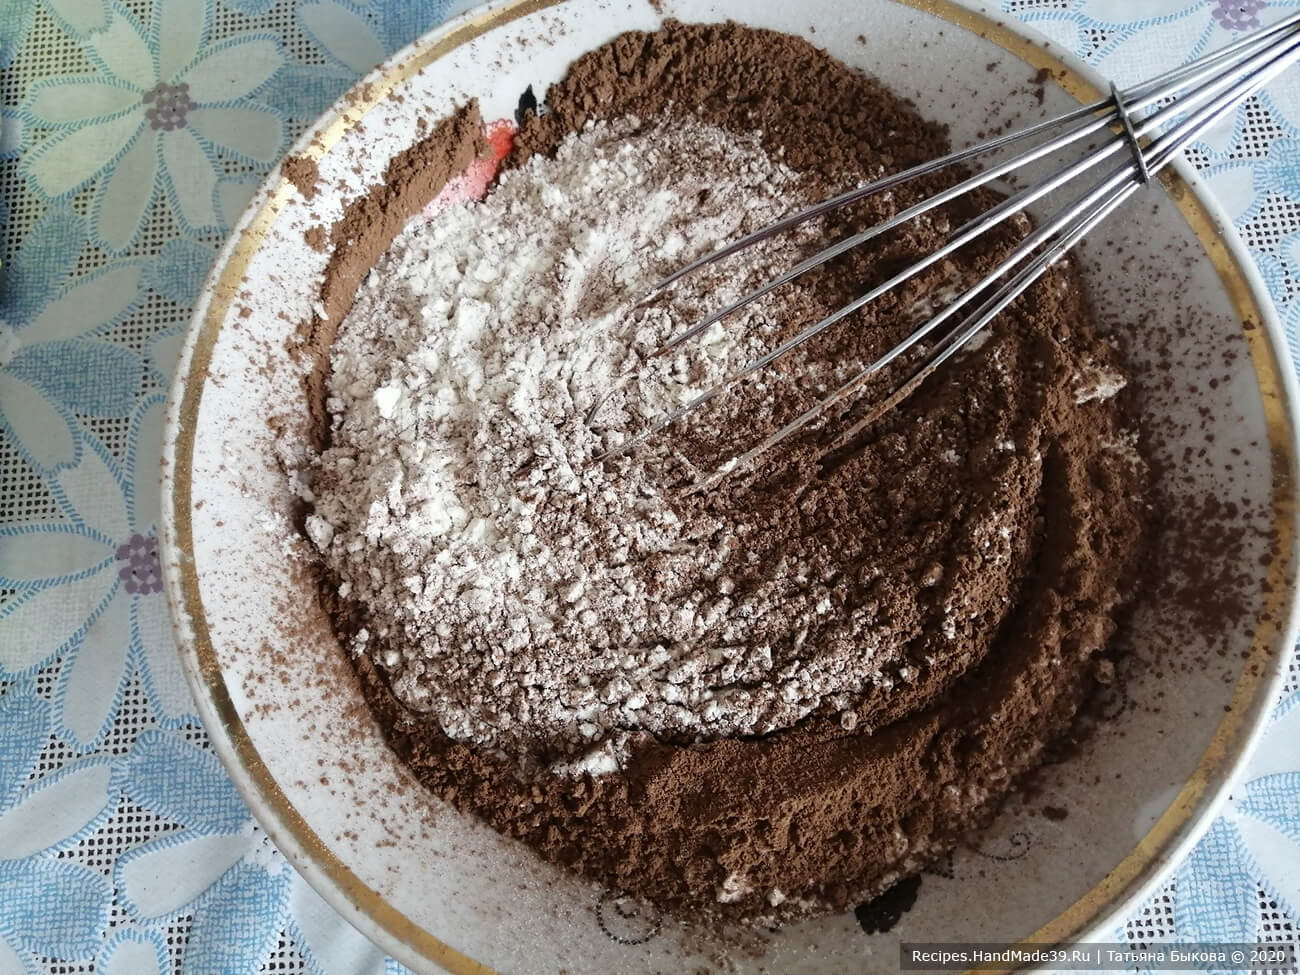 Приготовление бисквита для торта «Шоколадный бархат»: просеять пшеничную муку, какао-порошок и соду, хорошо перемешать венчиком